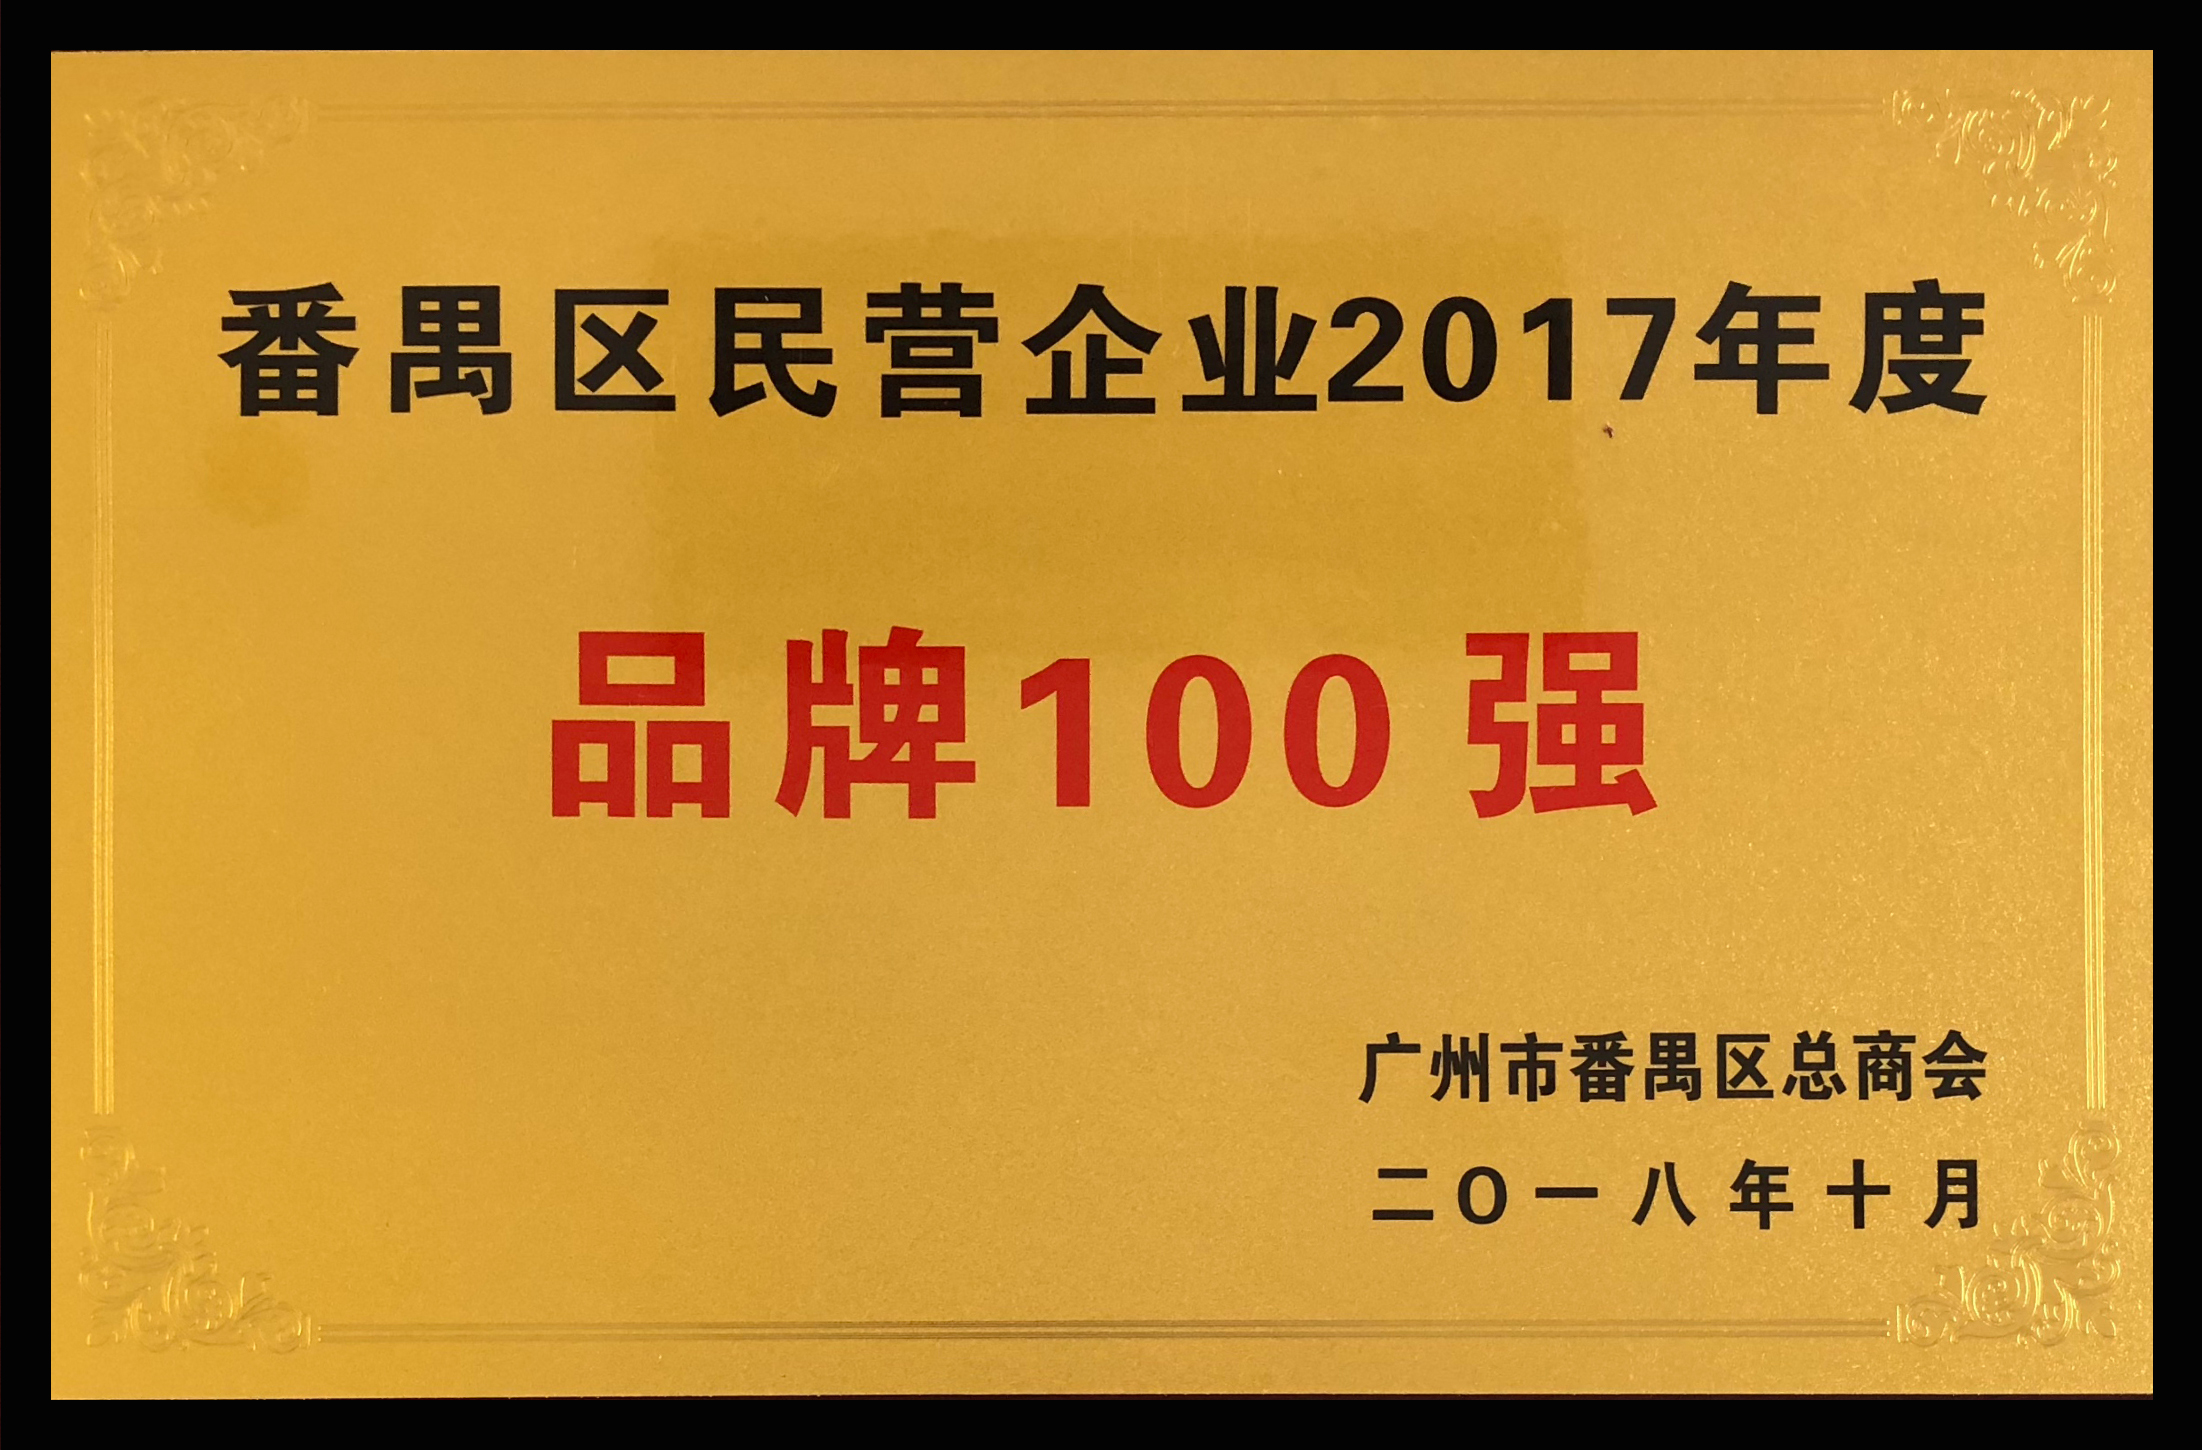 番禺區民營企業2017年度品牌100強